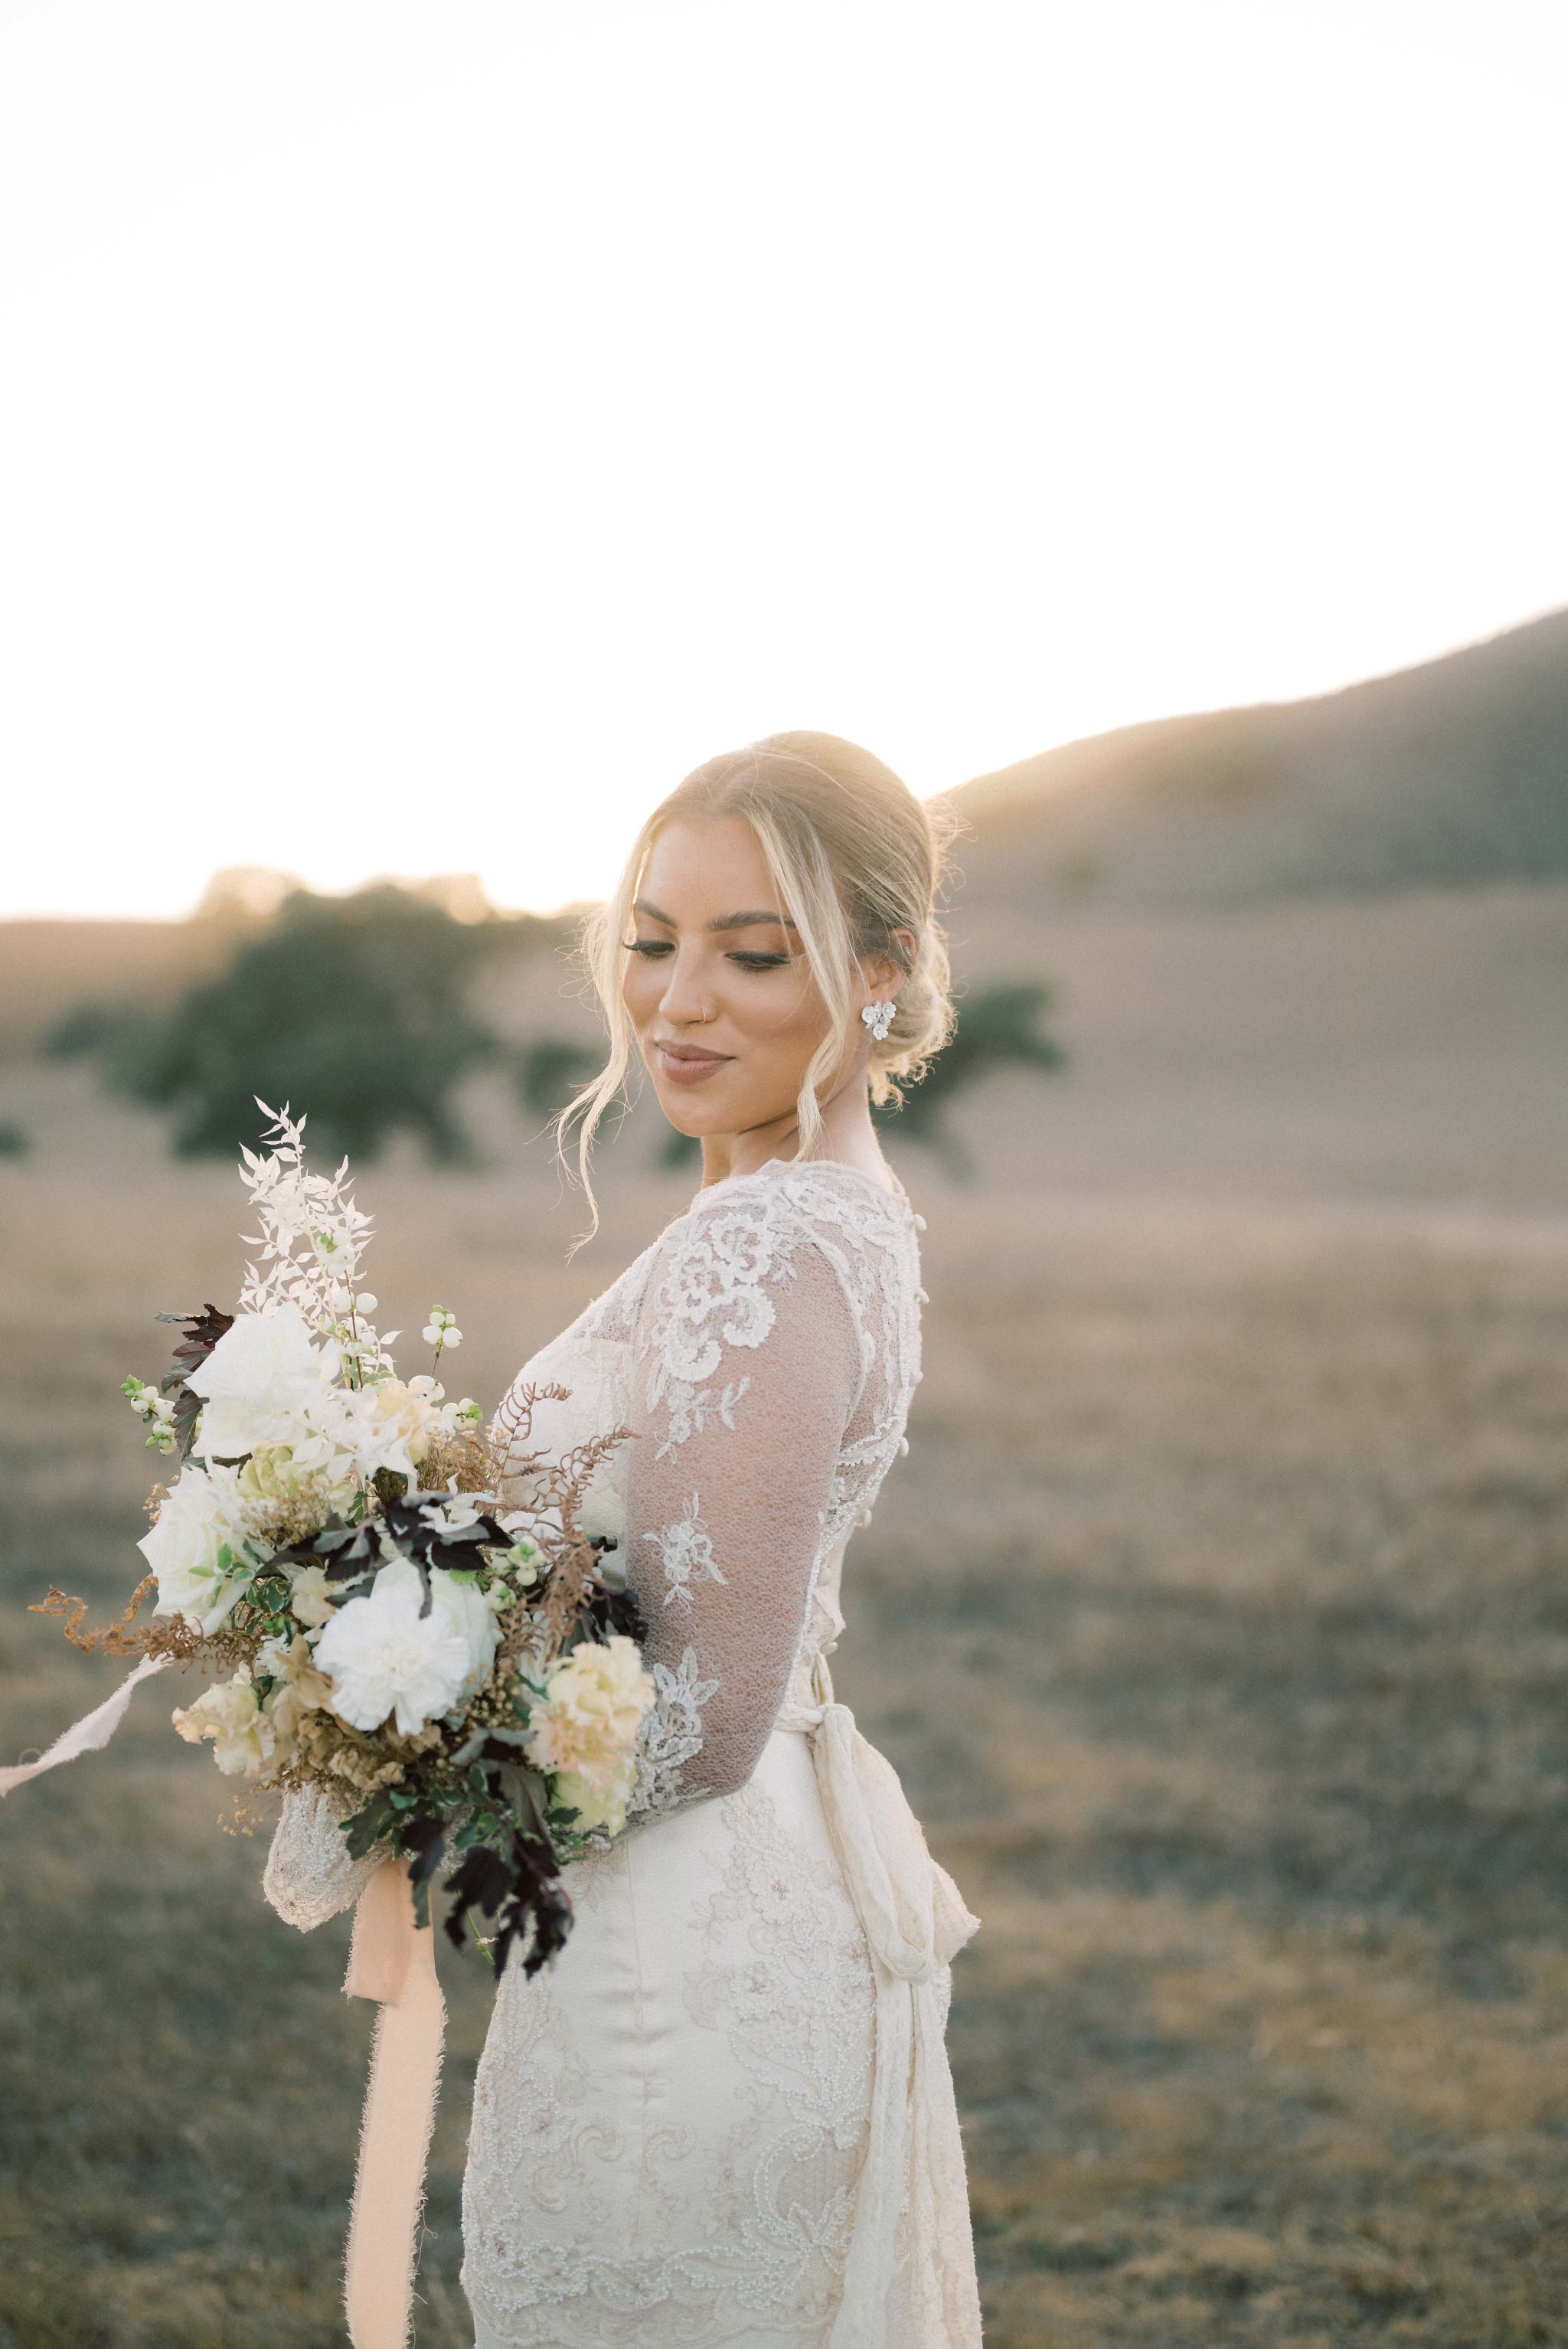 Bride holding wedding flowers in open field